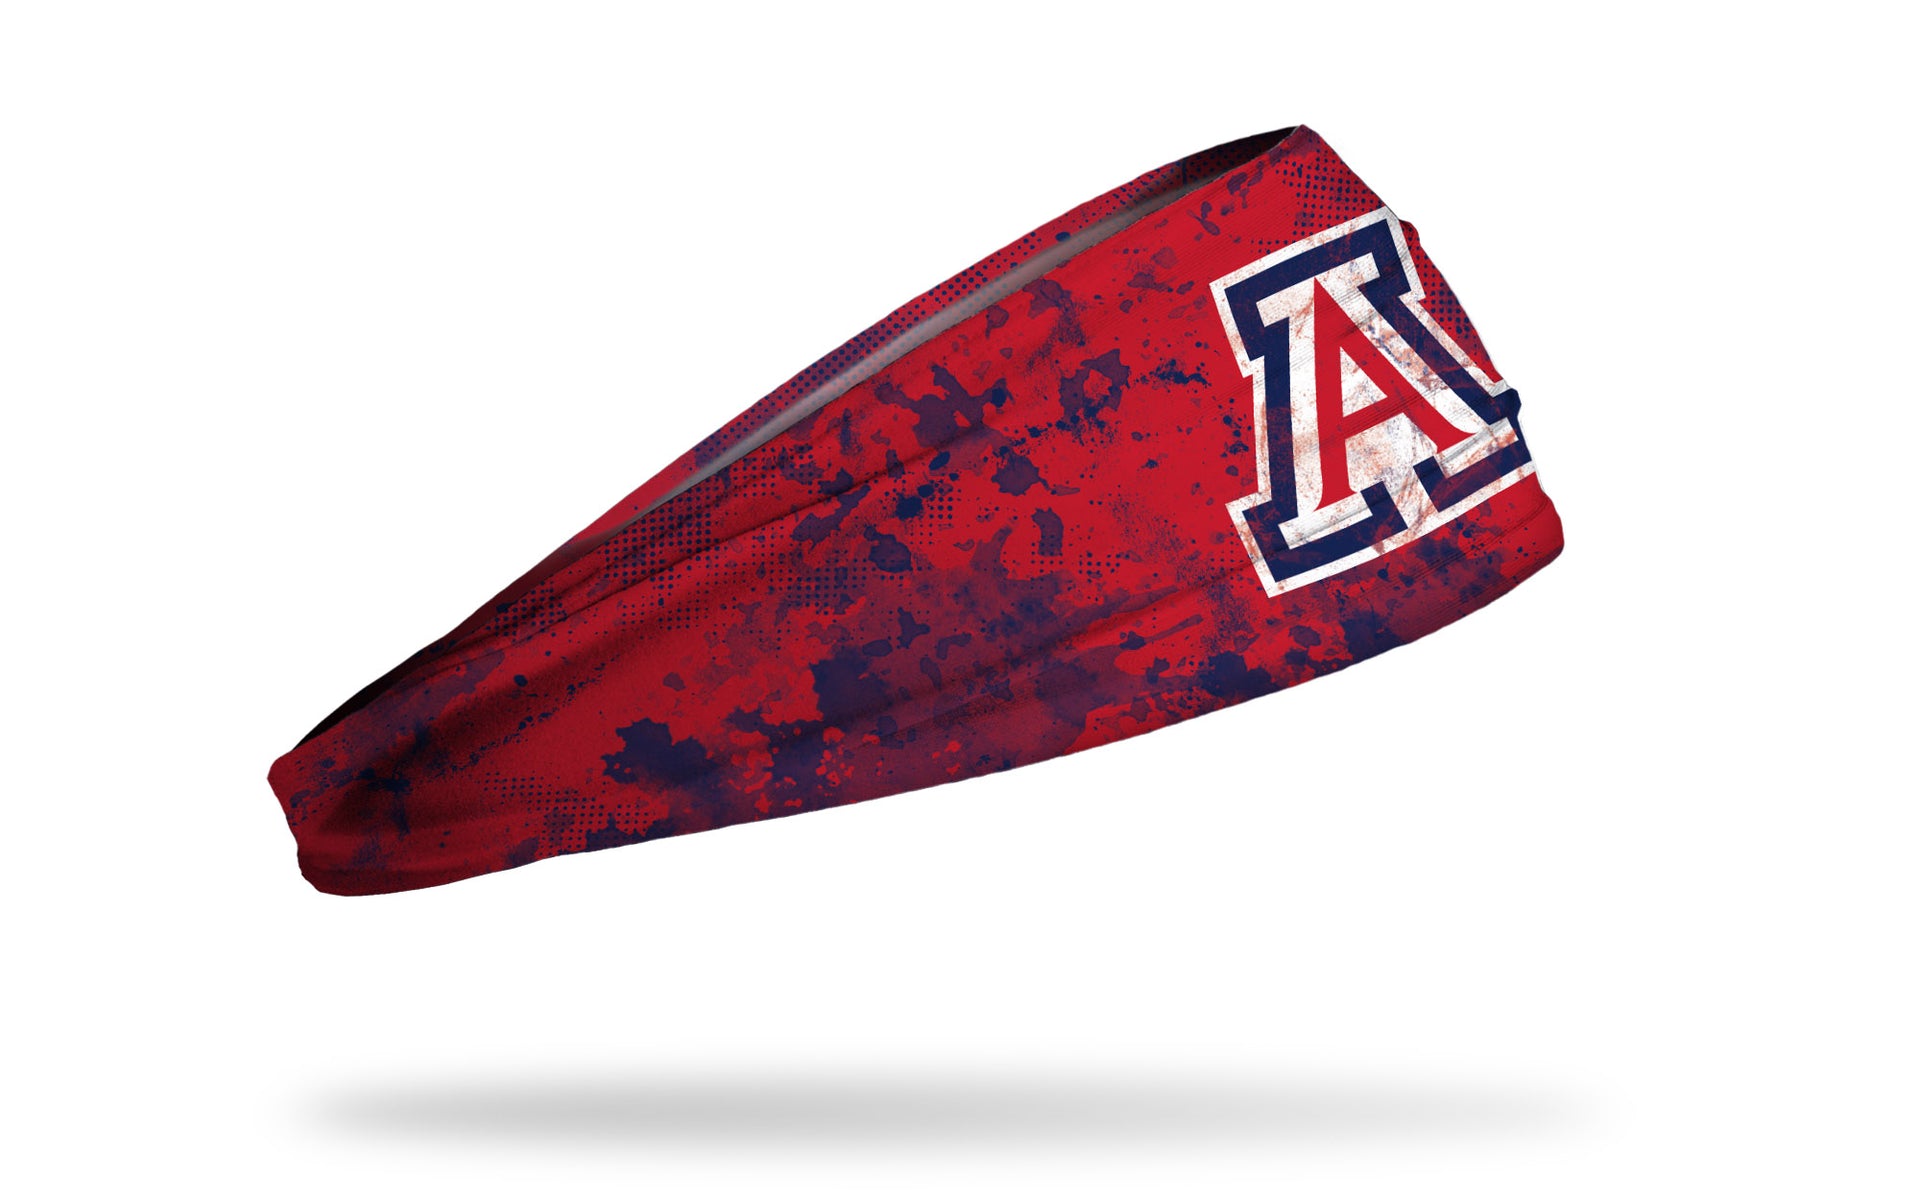 University of Arizona: Grunge Red Headband - View 2